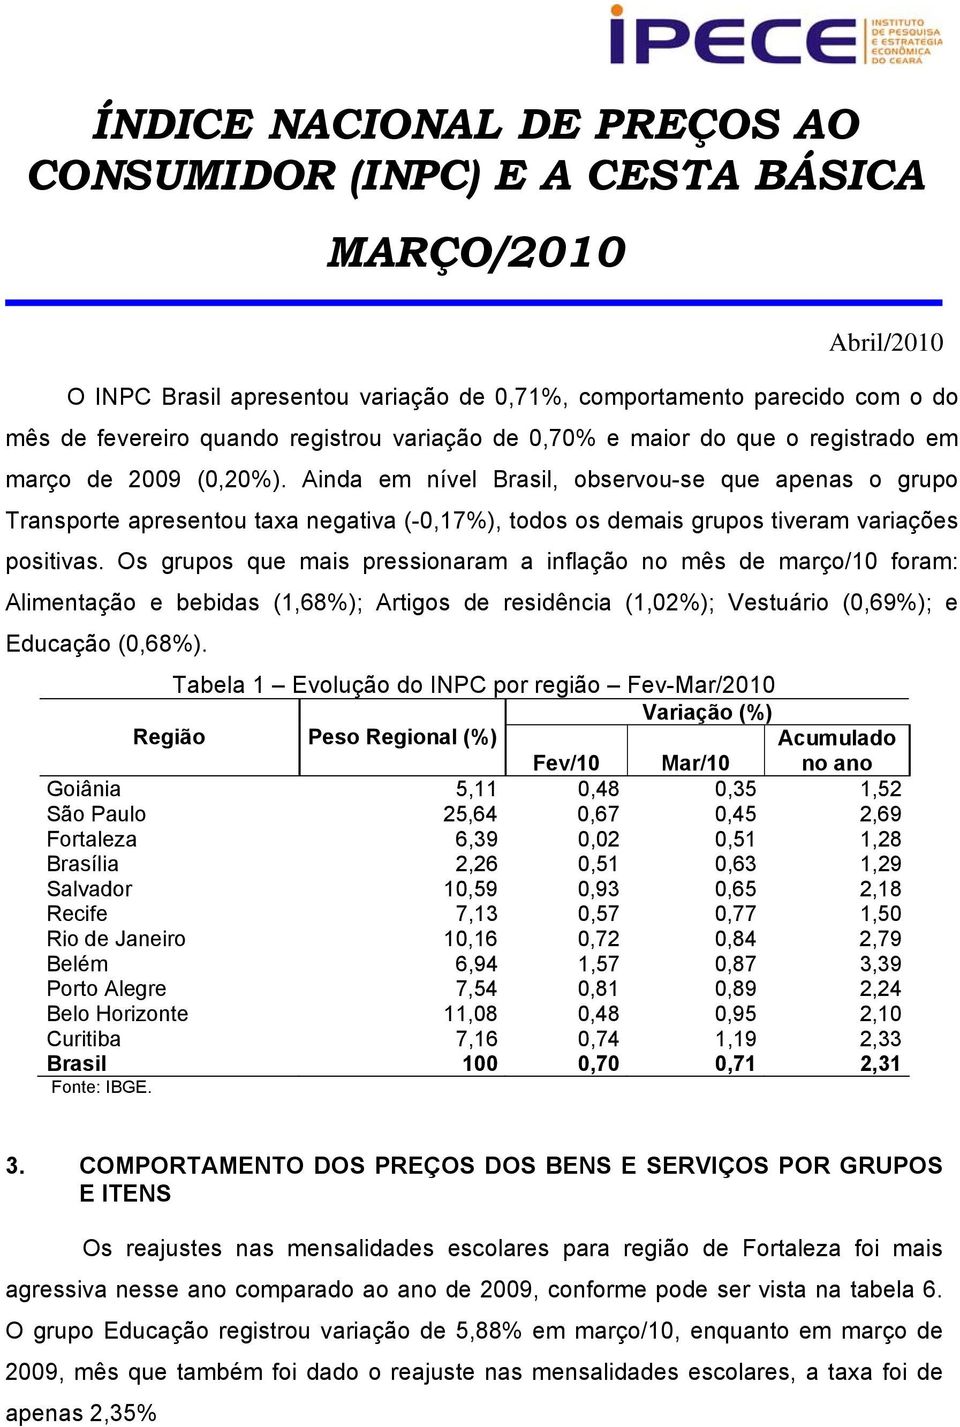 Os grupos que mais pressionaram a inflação no mês de março/10 foram: Alimentação e bebidas (1,68%); Artigos de residência (1,02%); Vestuário (0,69%); e Educação (0,68%).